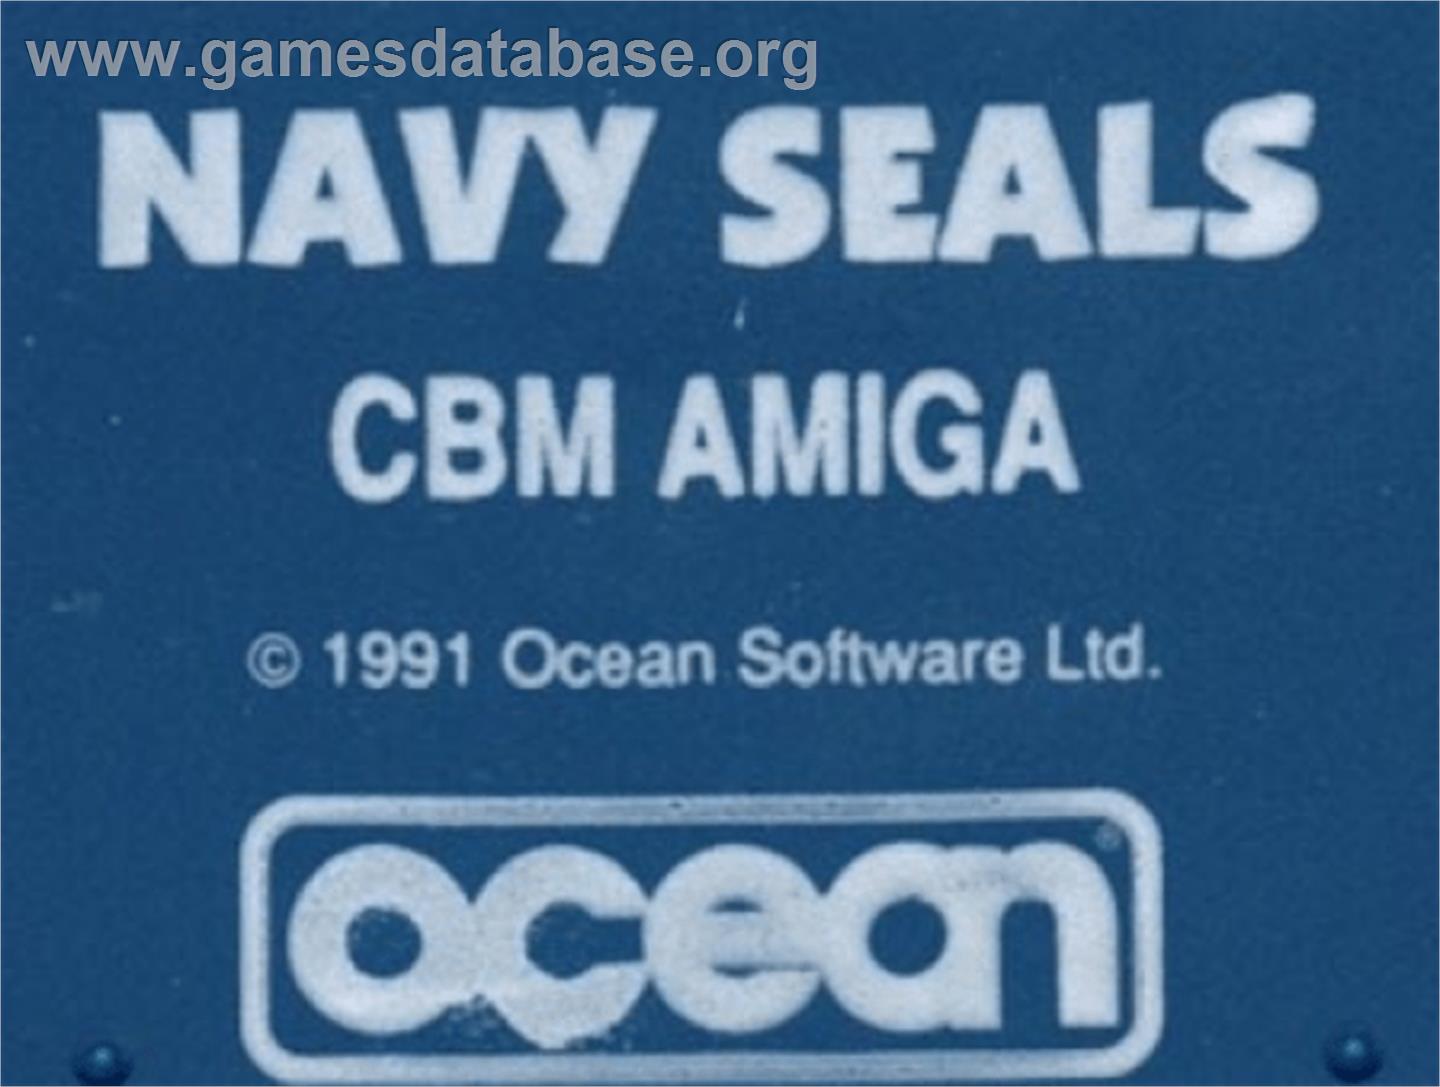 Navy Seals - Commodore Amiga - Artwork - Cartridge Top